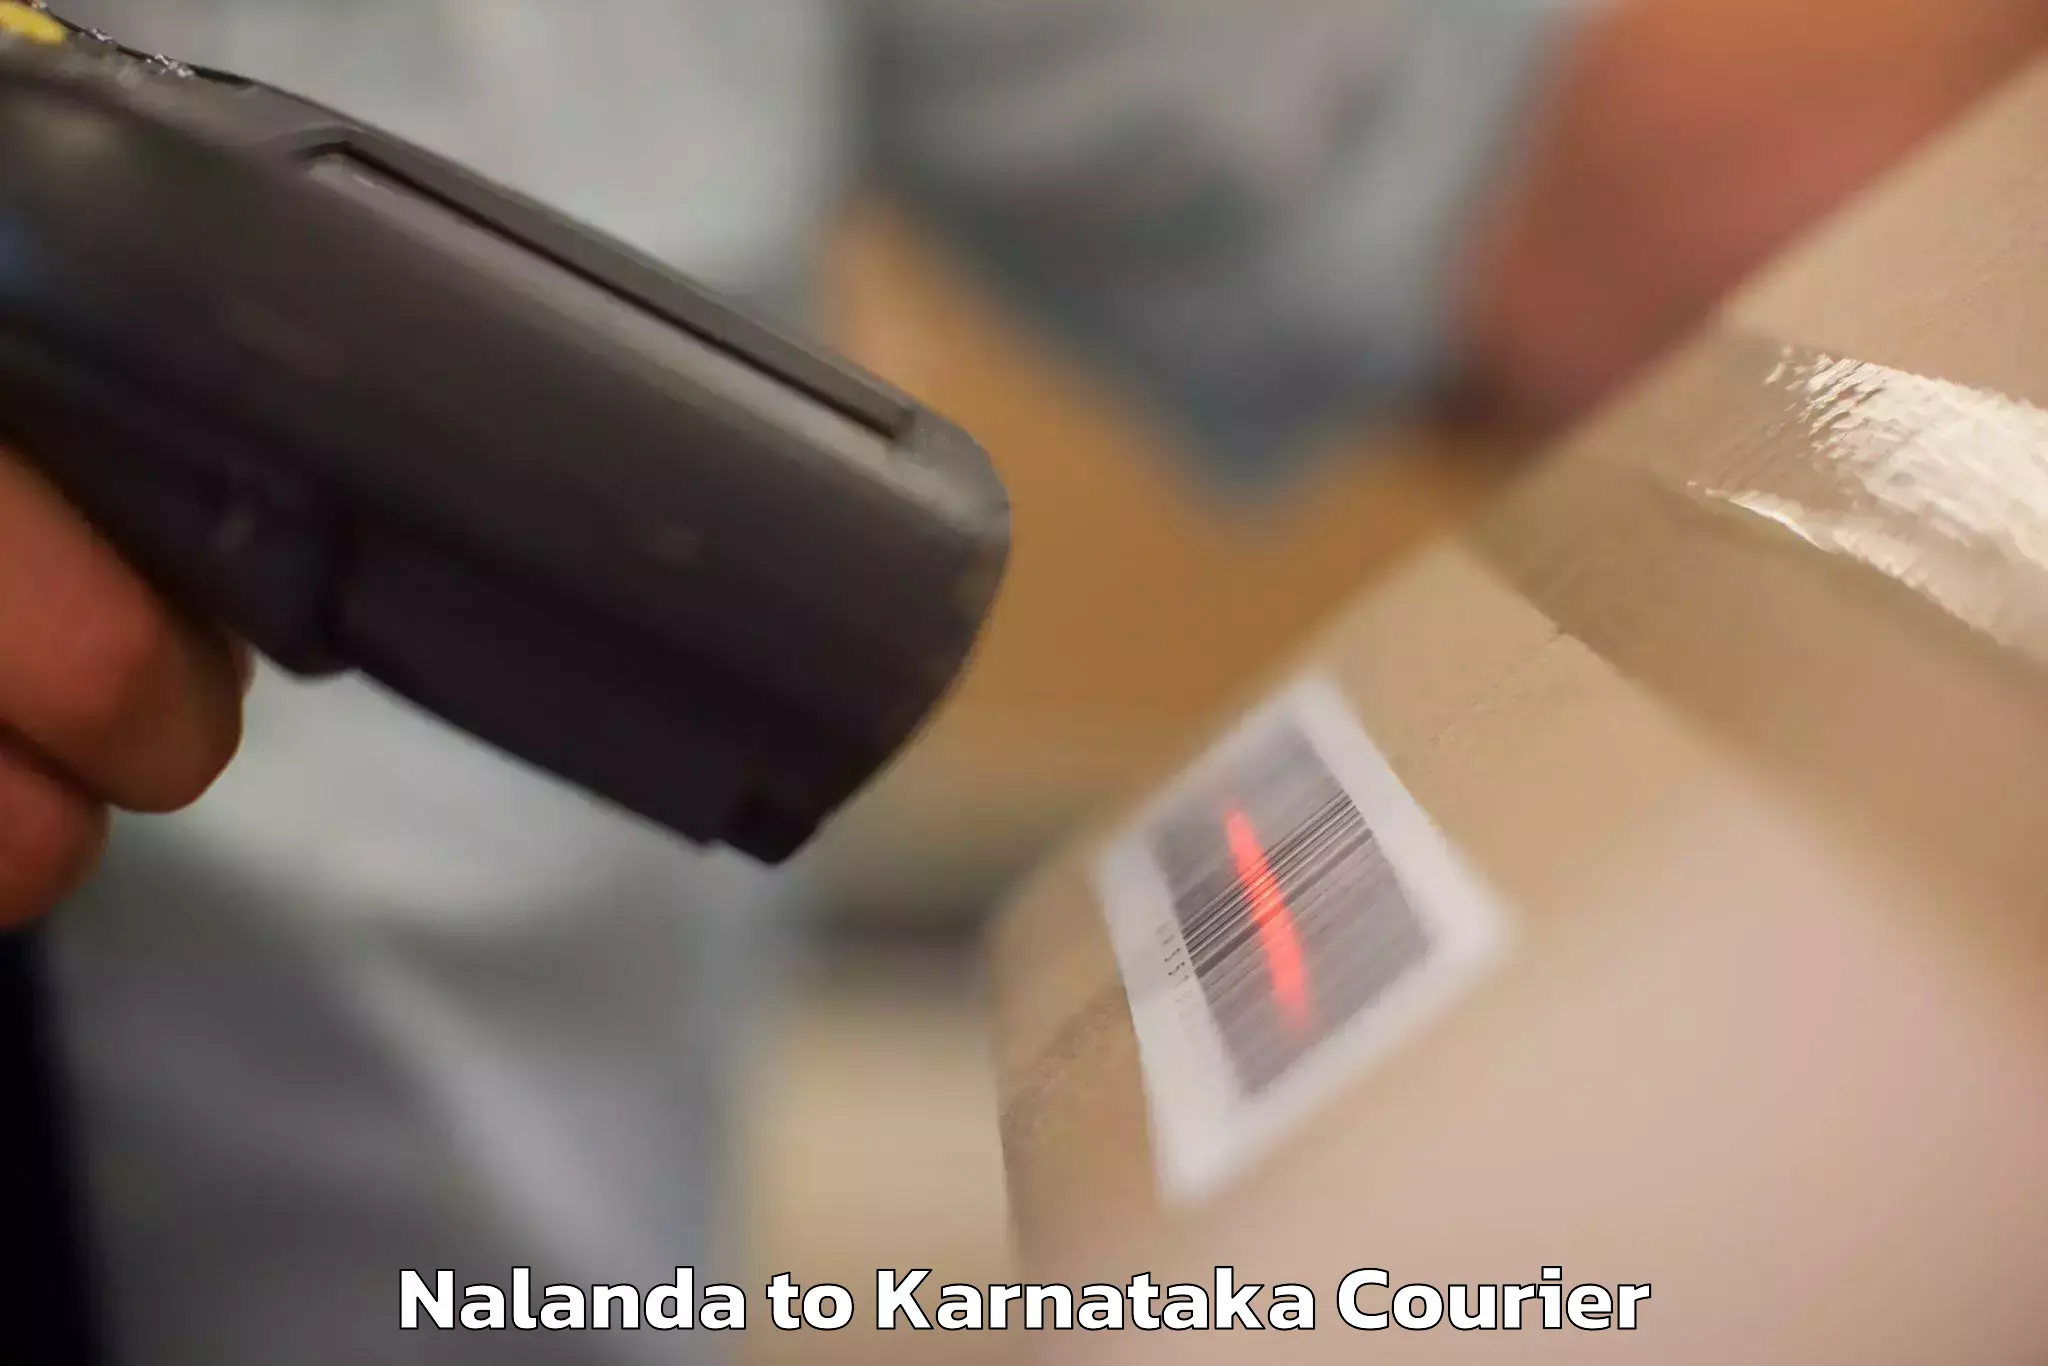 Baggage transport scheduler Nalanda to Karnataka